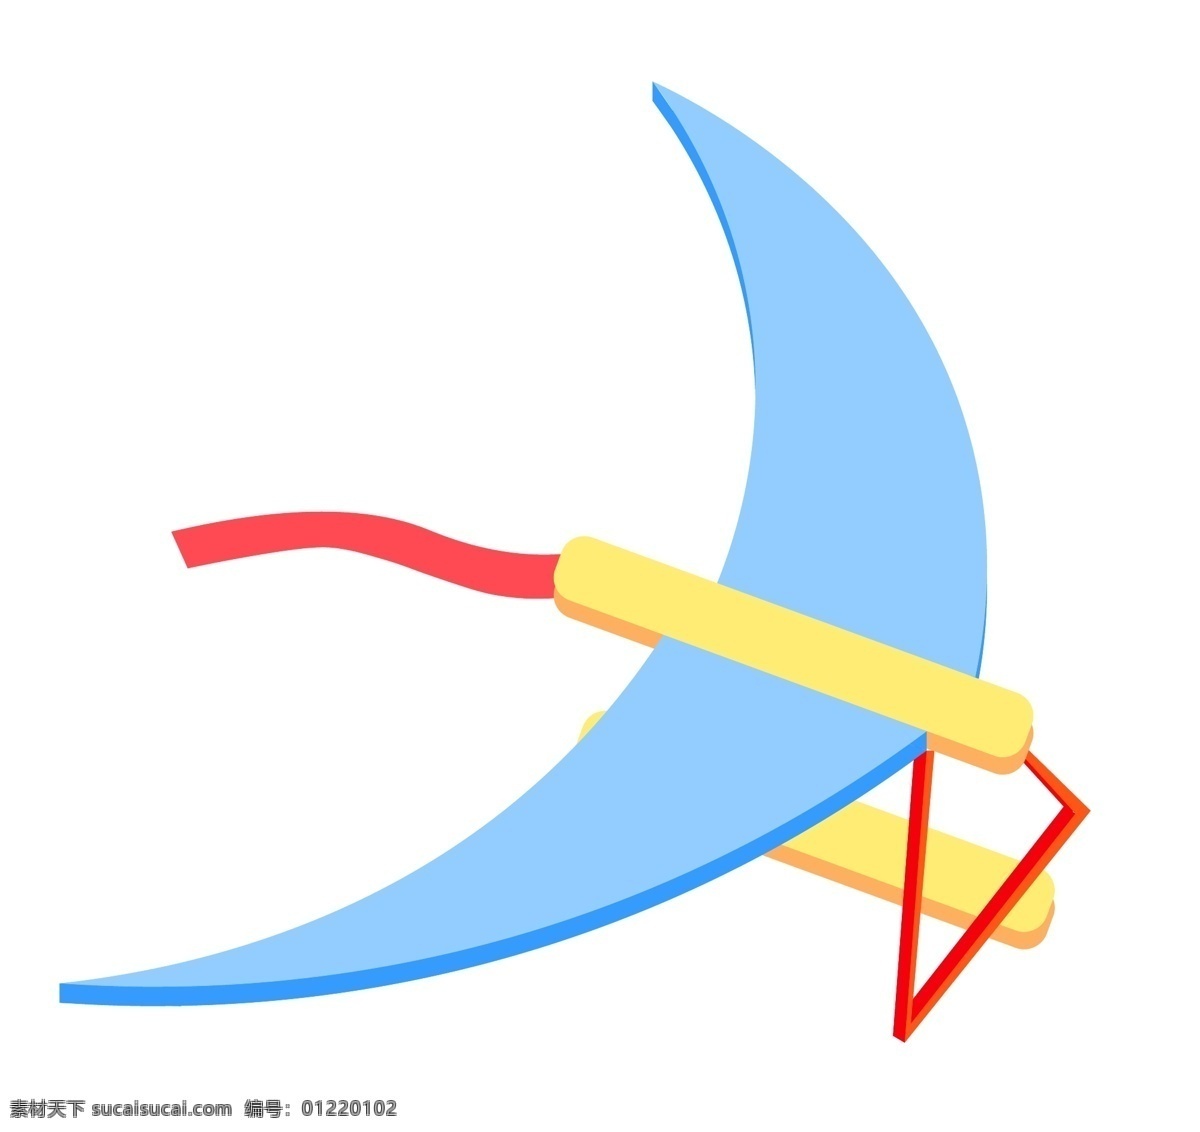 蓝色 飞机 装饰 插画 蓝色的飞机 航空飞机 简易飞机 漂亮的飞机 立体飞机 卡通飞机 飞机装饰 飞机插画